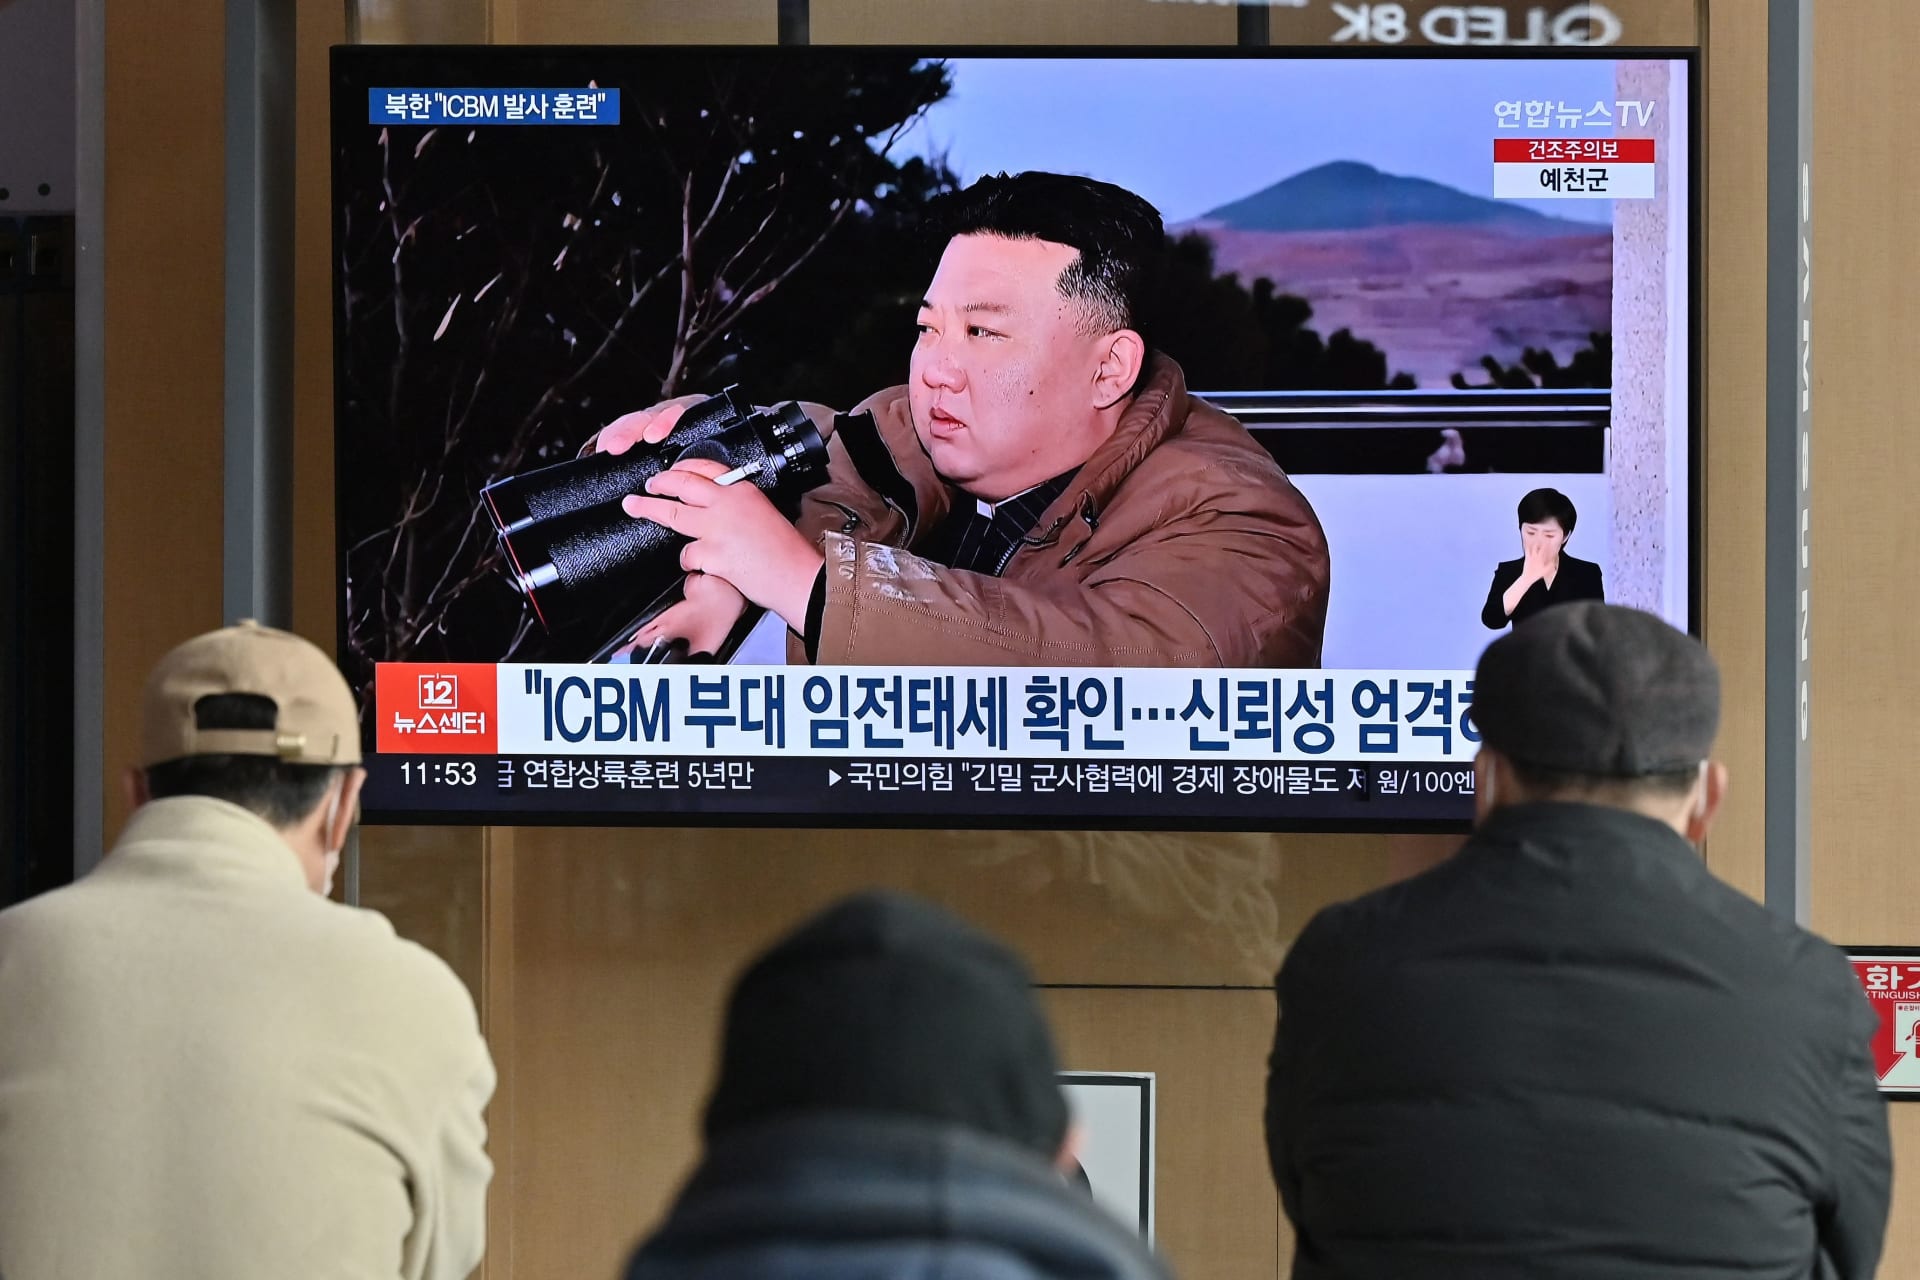 كوريا الشمالية تعلن اختبار "سلاح نووي استراتيجي جديد" تحت الماء